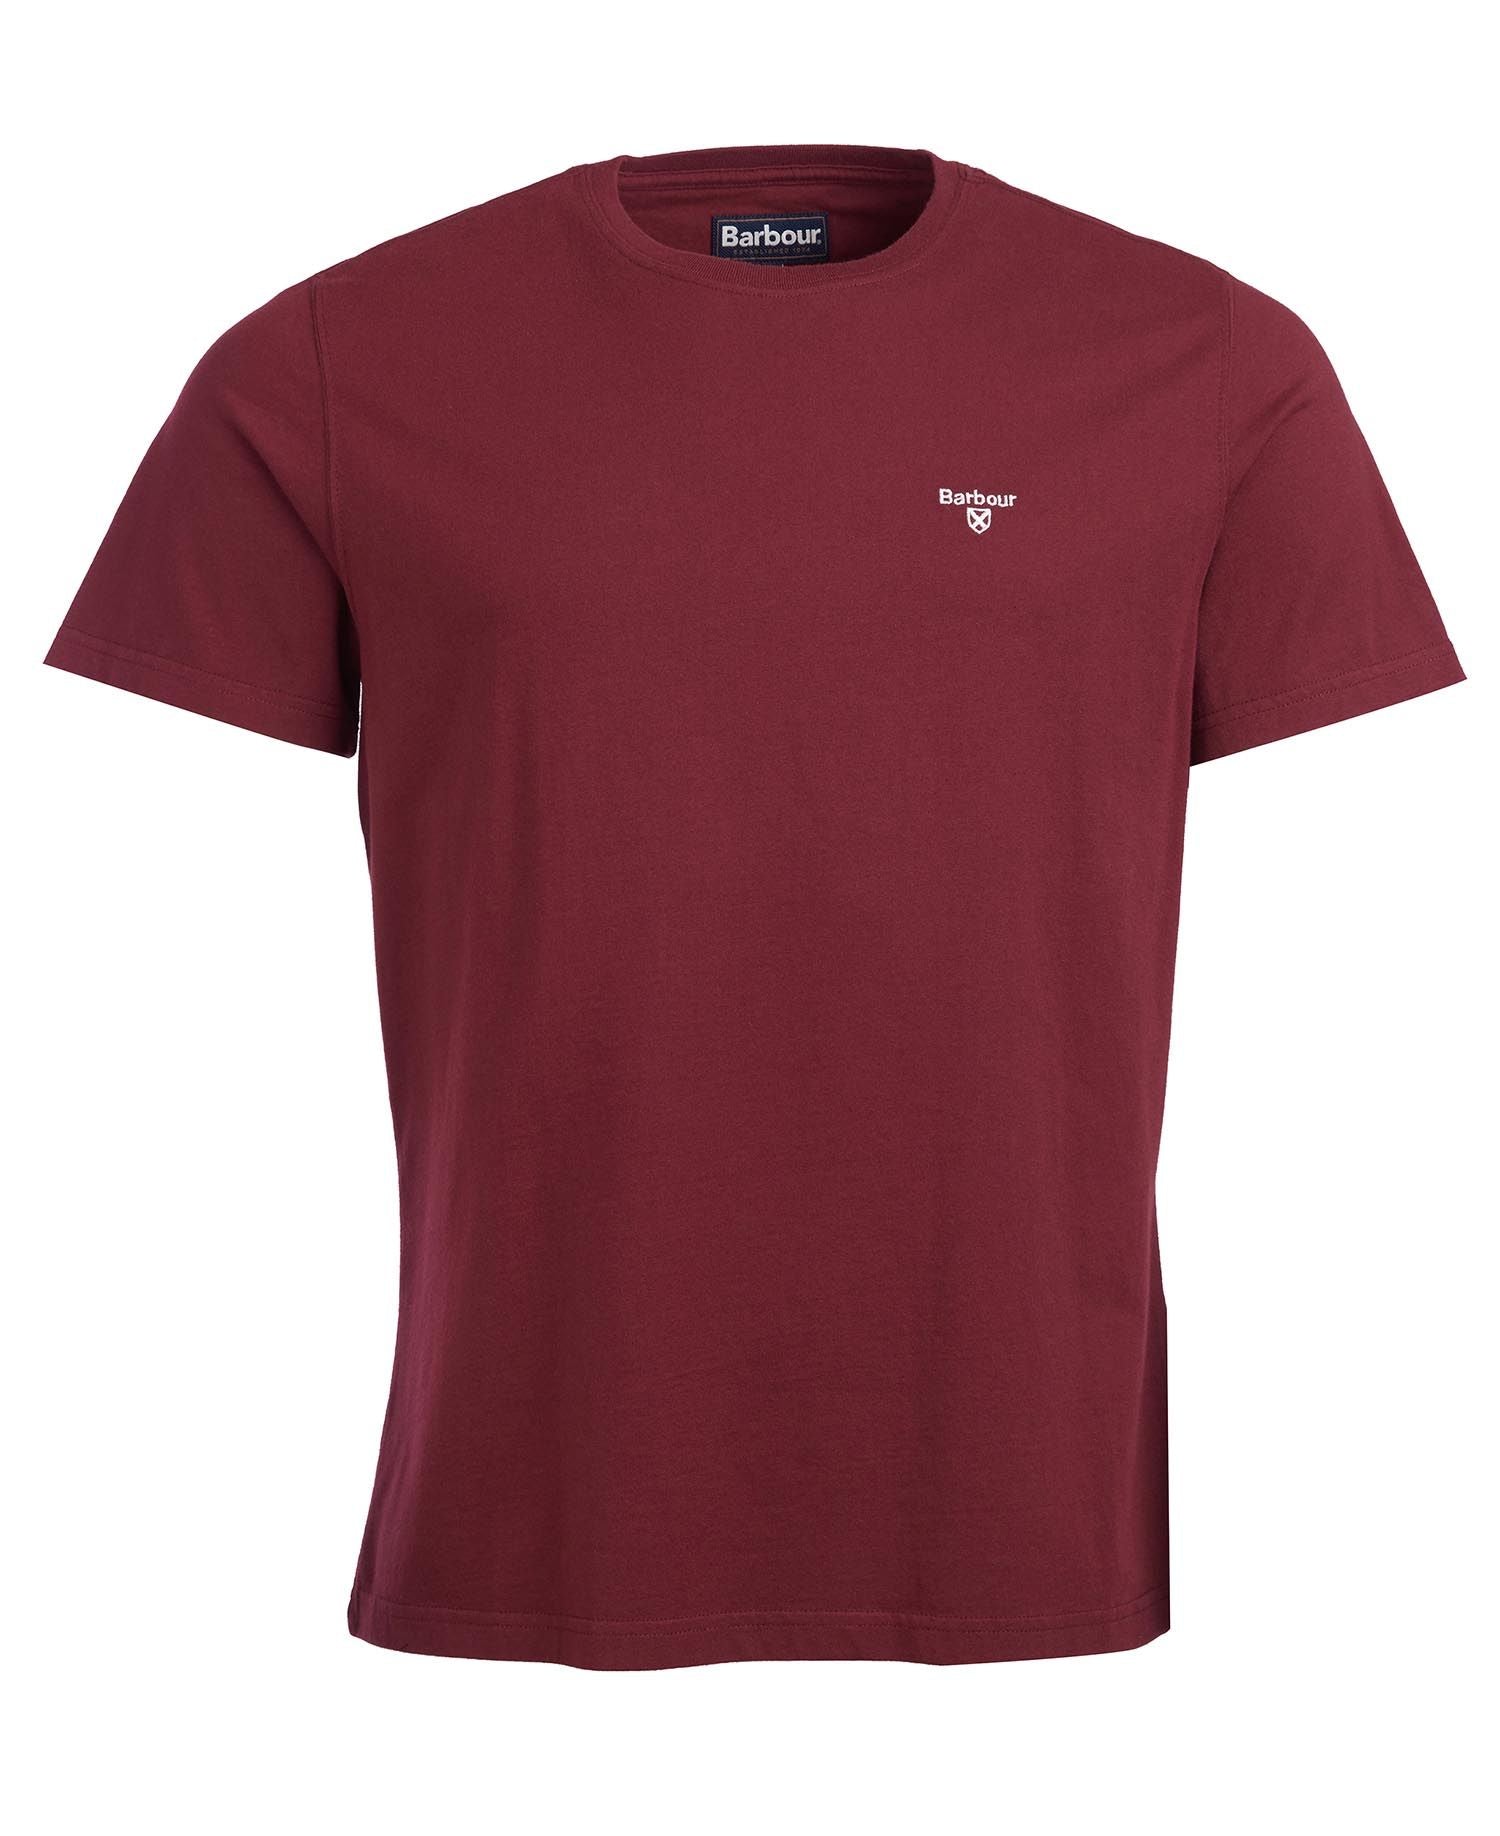 T-Shirt Barbour con Logo / Bordeaux - Ideal Moda